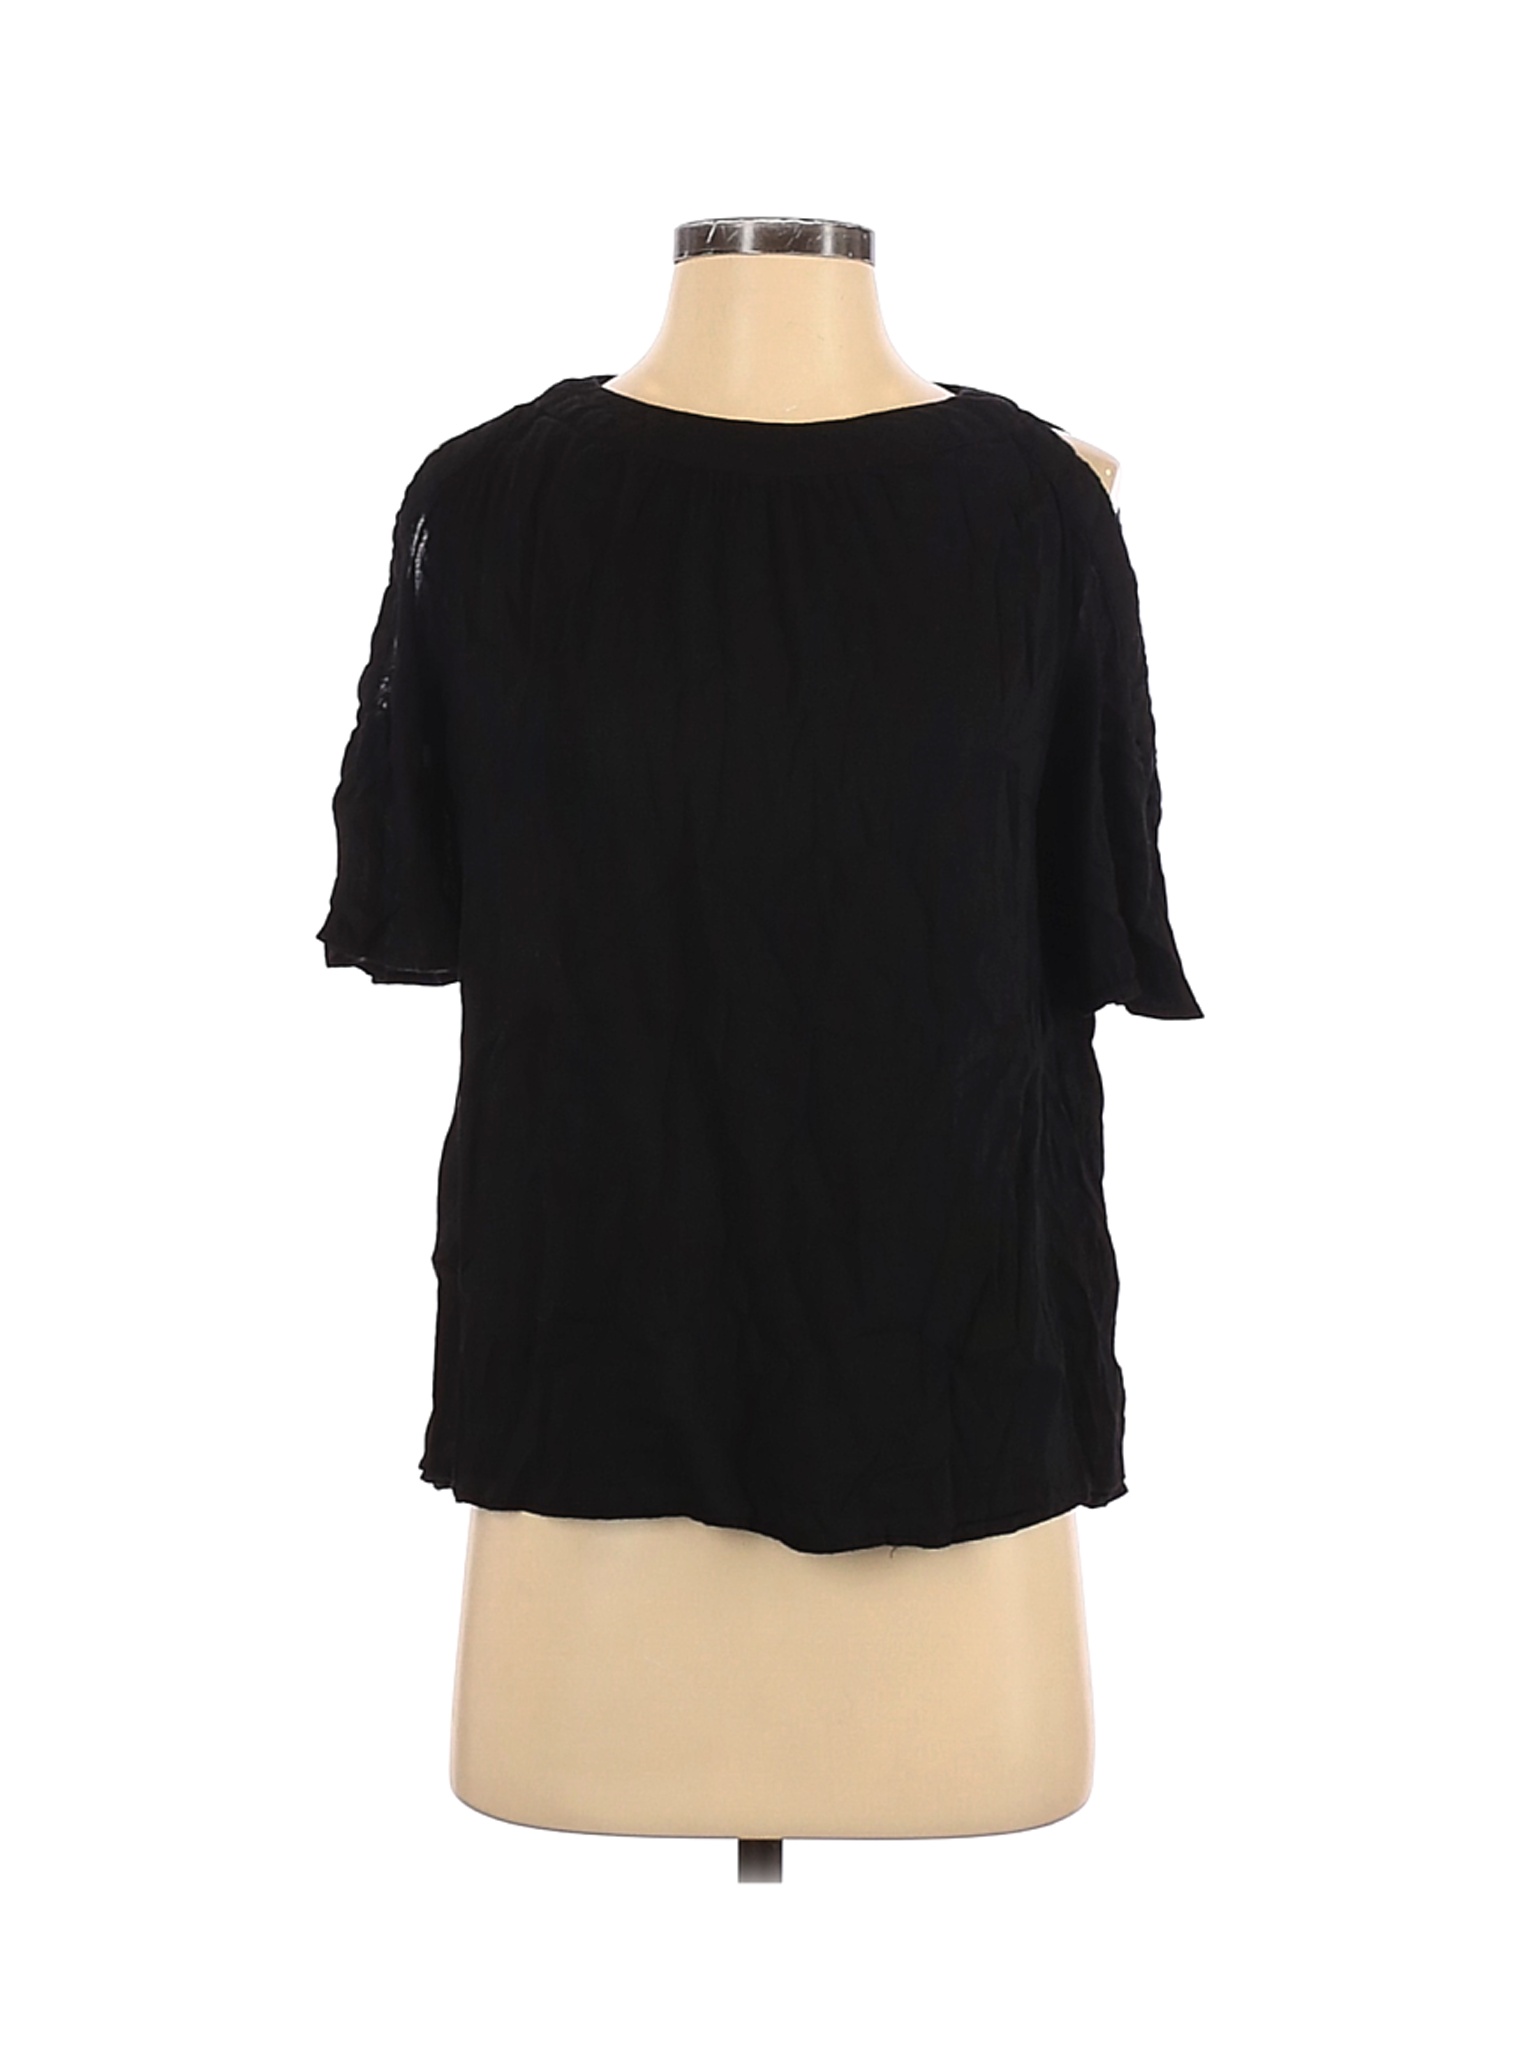 Old Navy Women Black Short Sleeve Blouse S | eBay